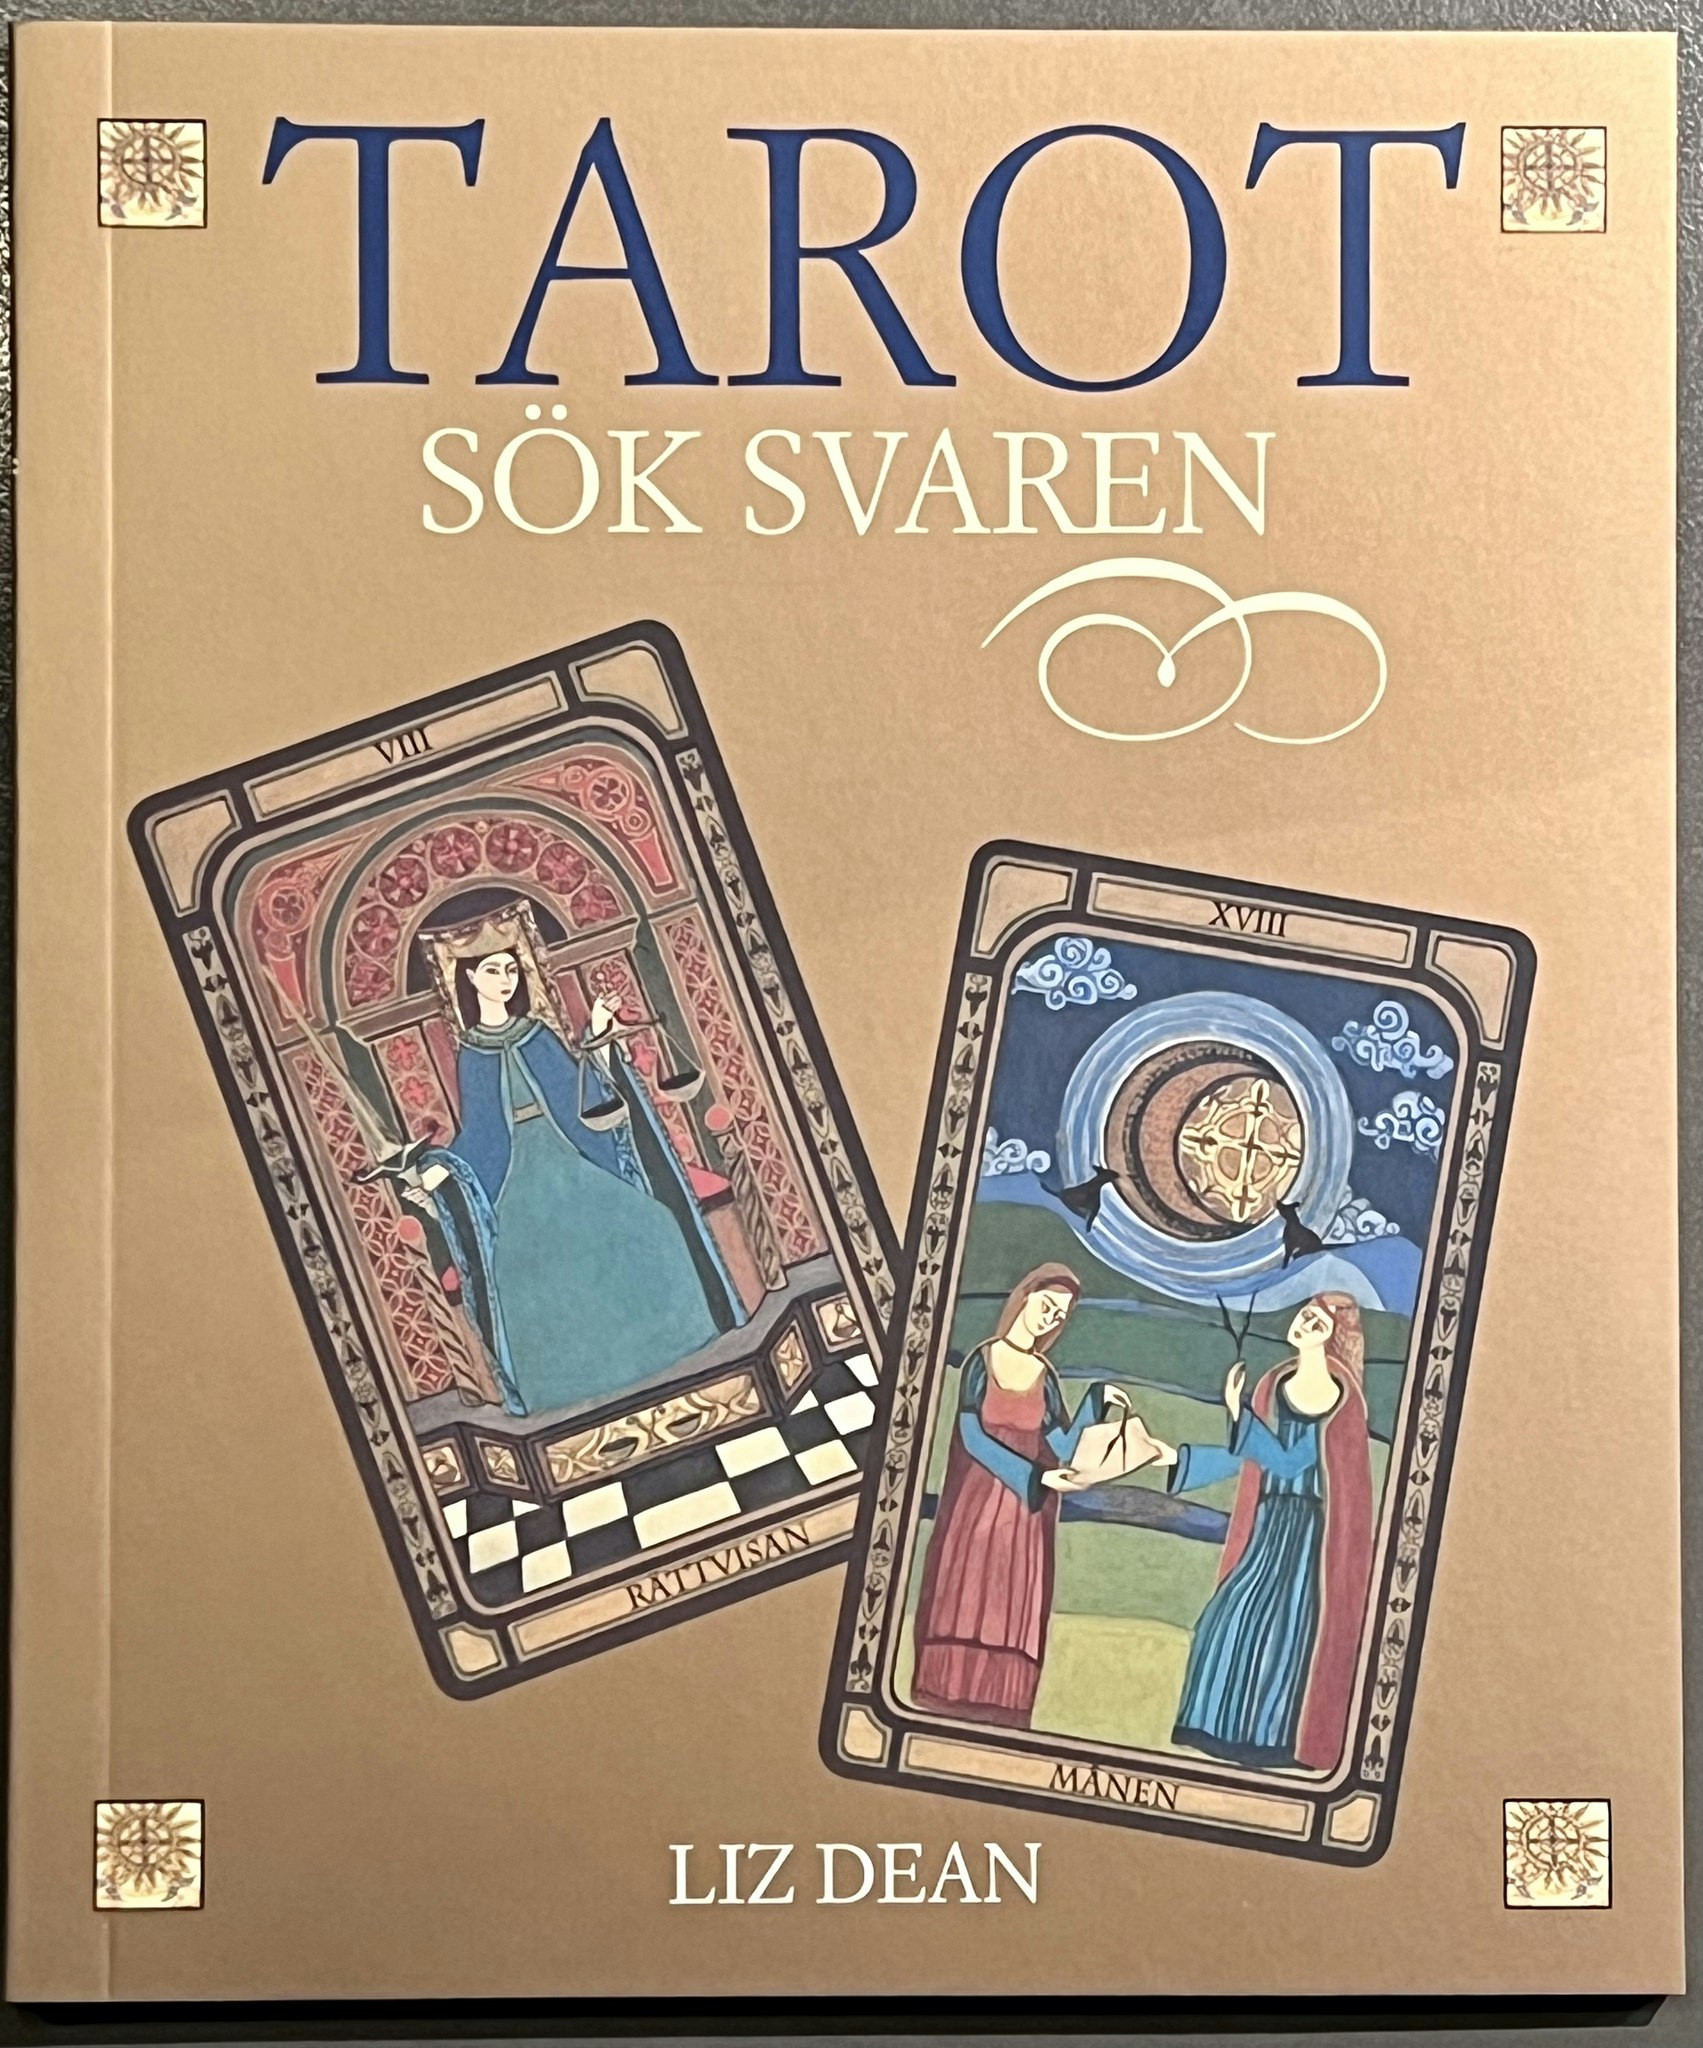 Tarot: sök svaren (Svenska)